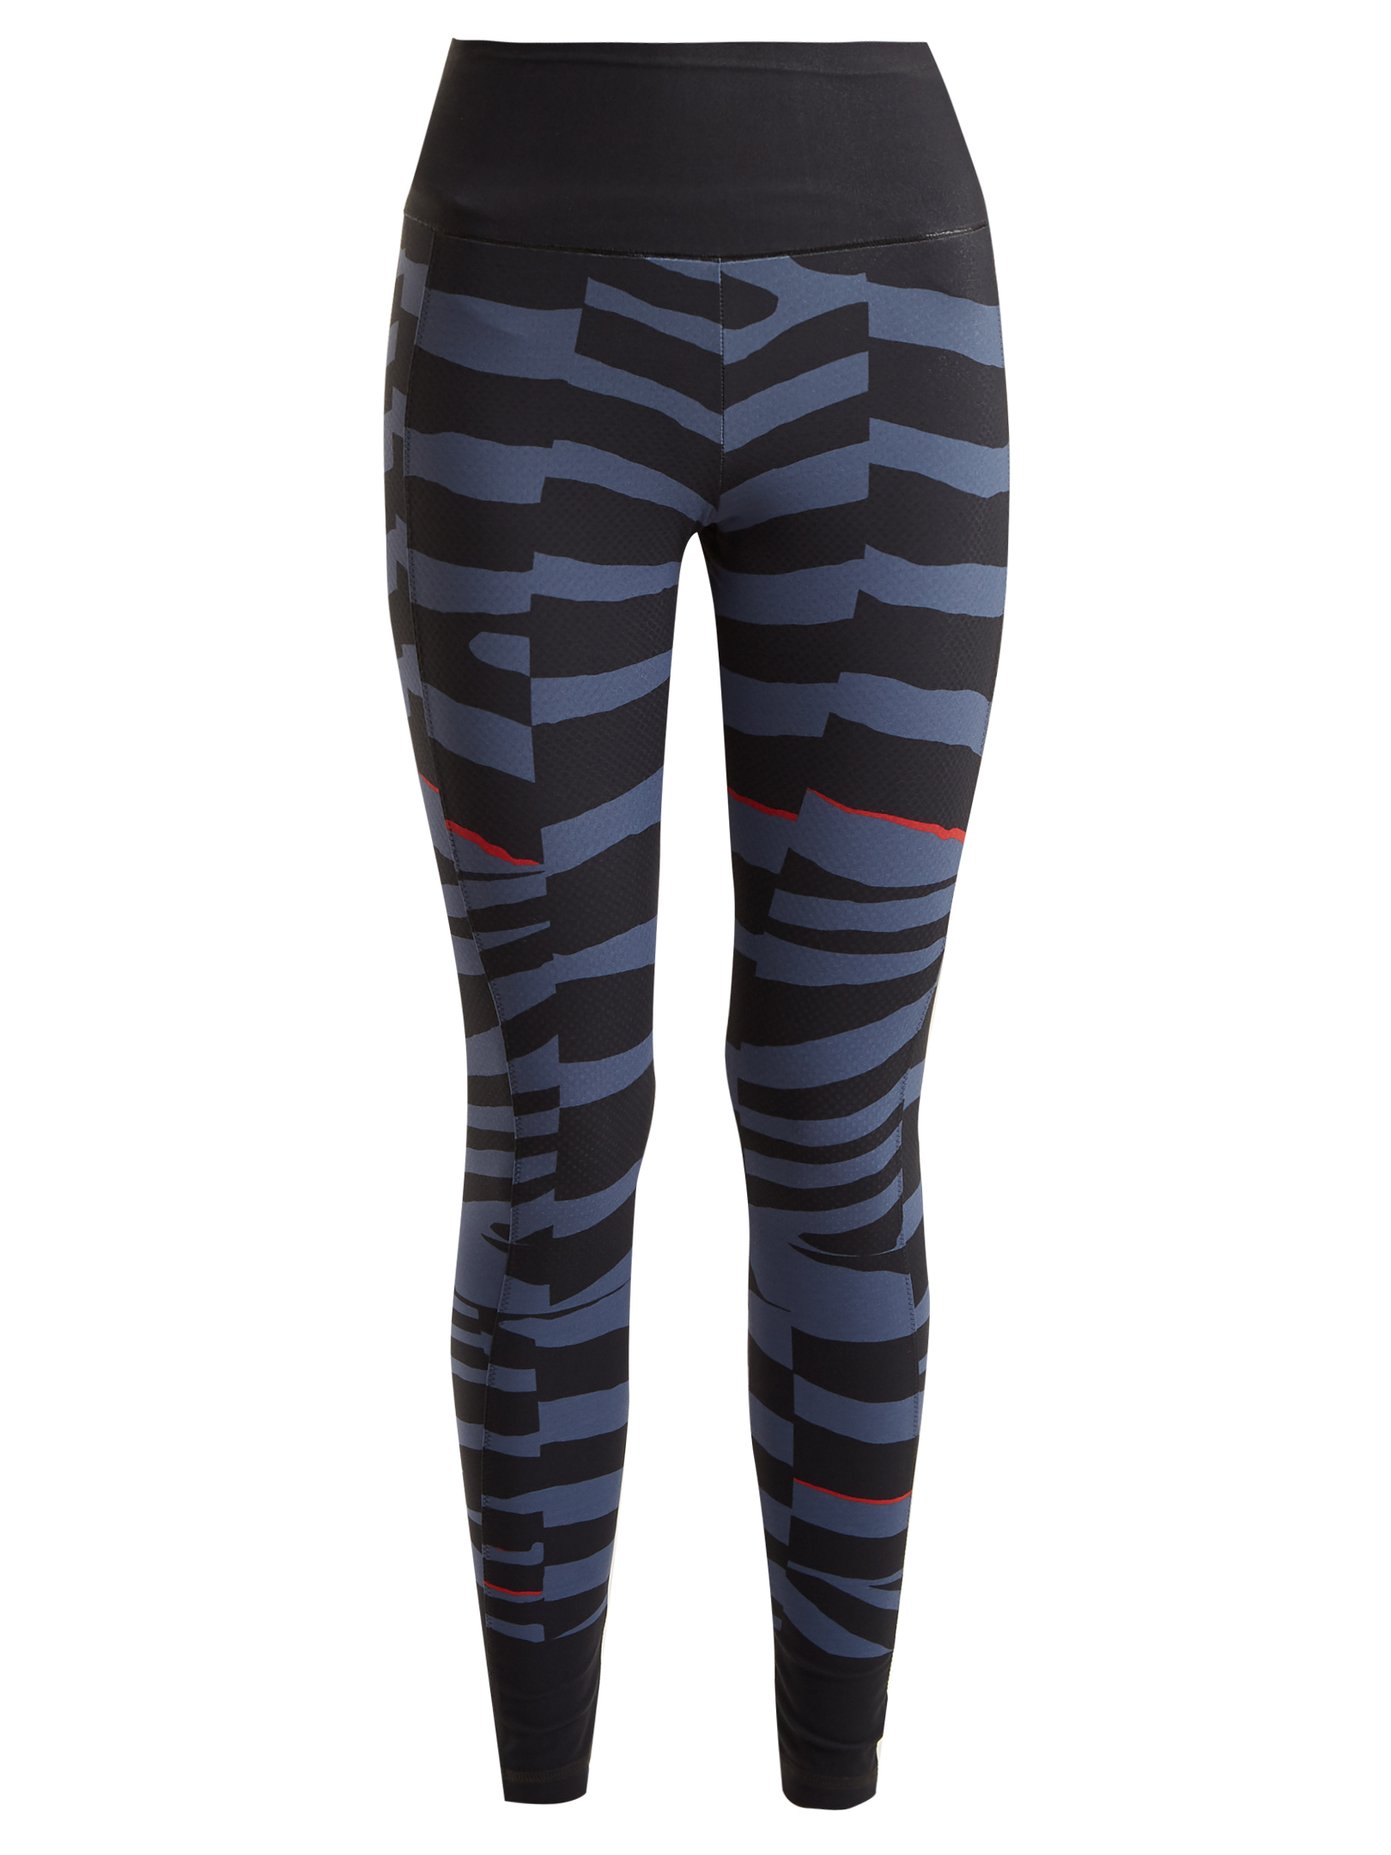 adidas zebra print leggings